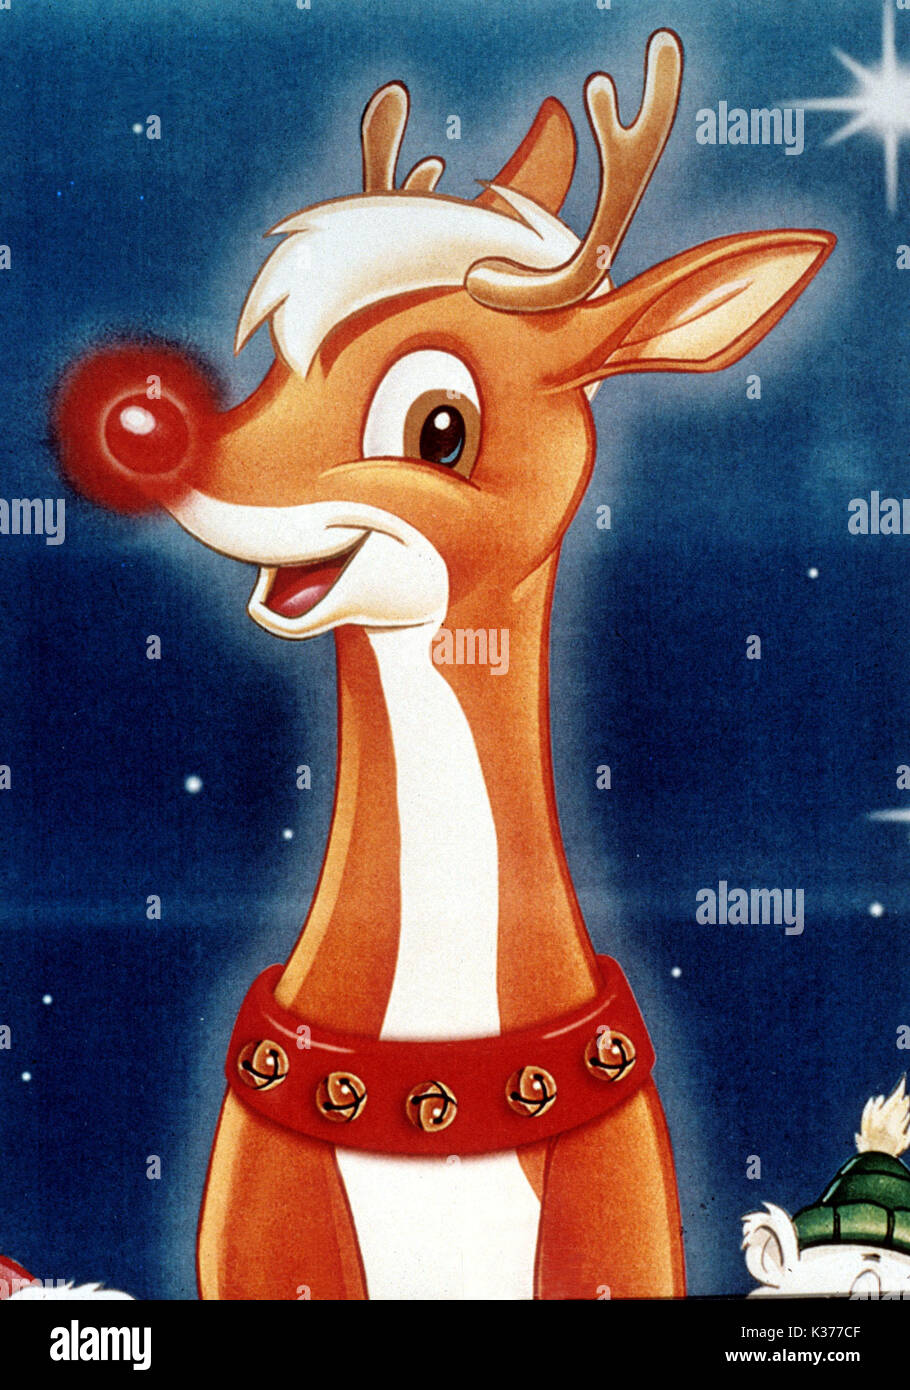 Rudolph, das rentier mit der roten nase, sitzt auf einem weißen  hintergrund.